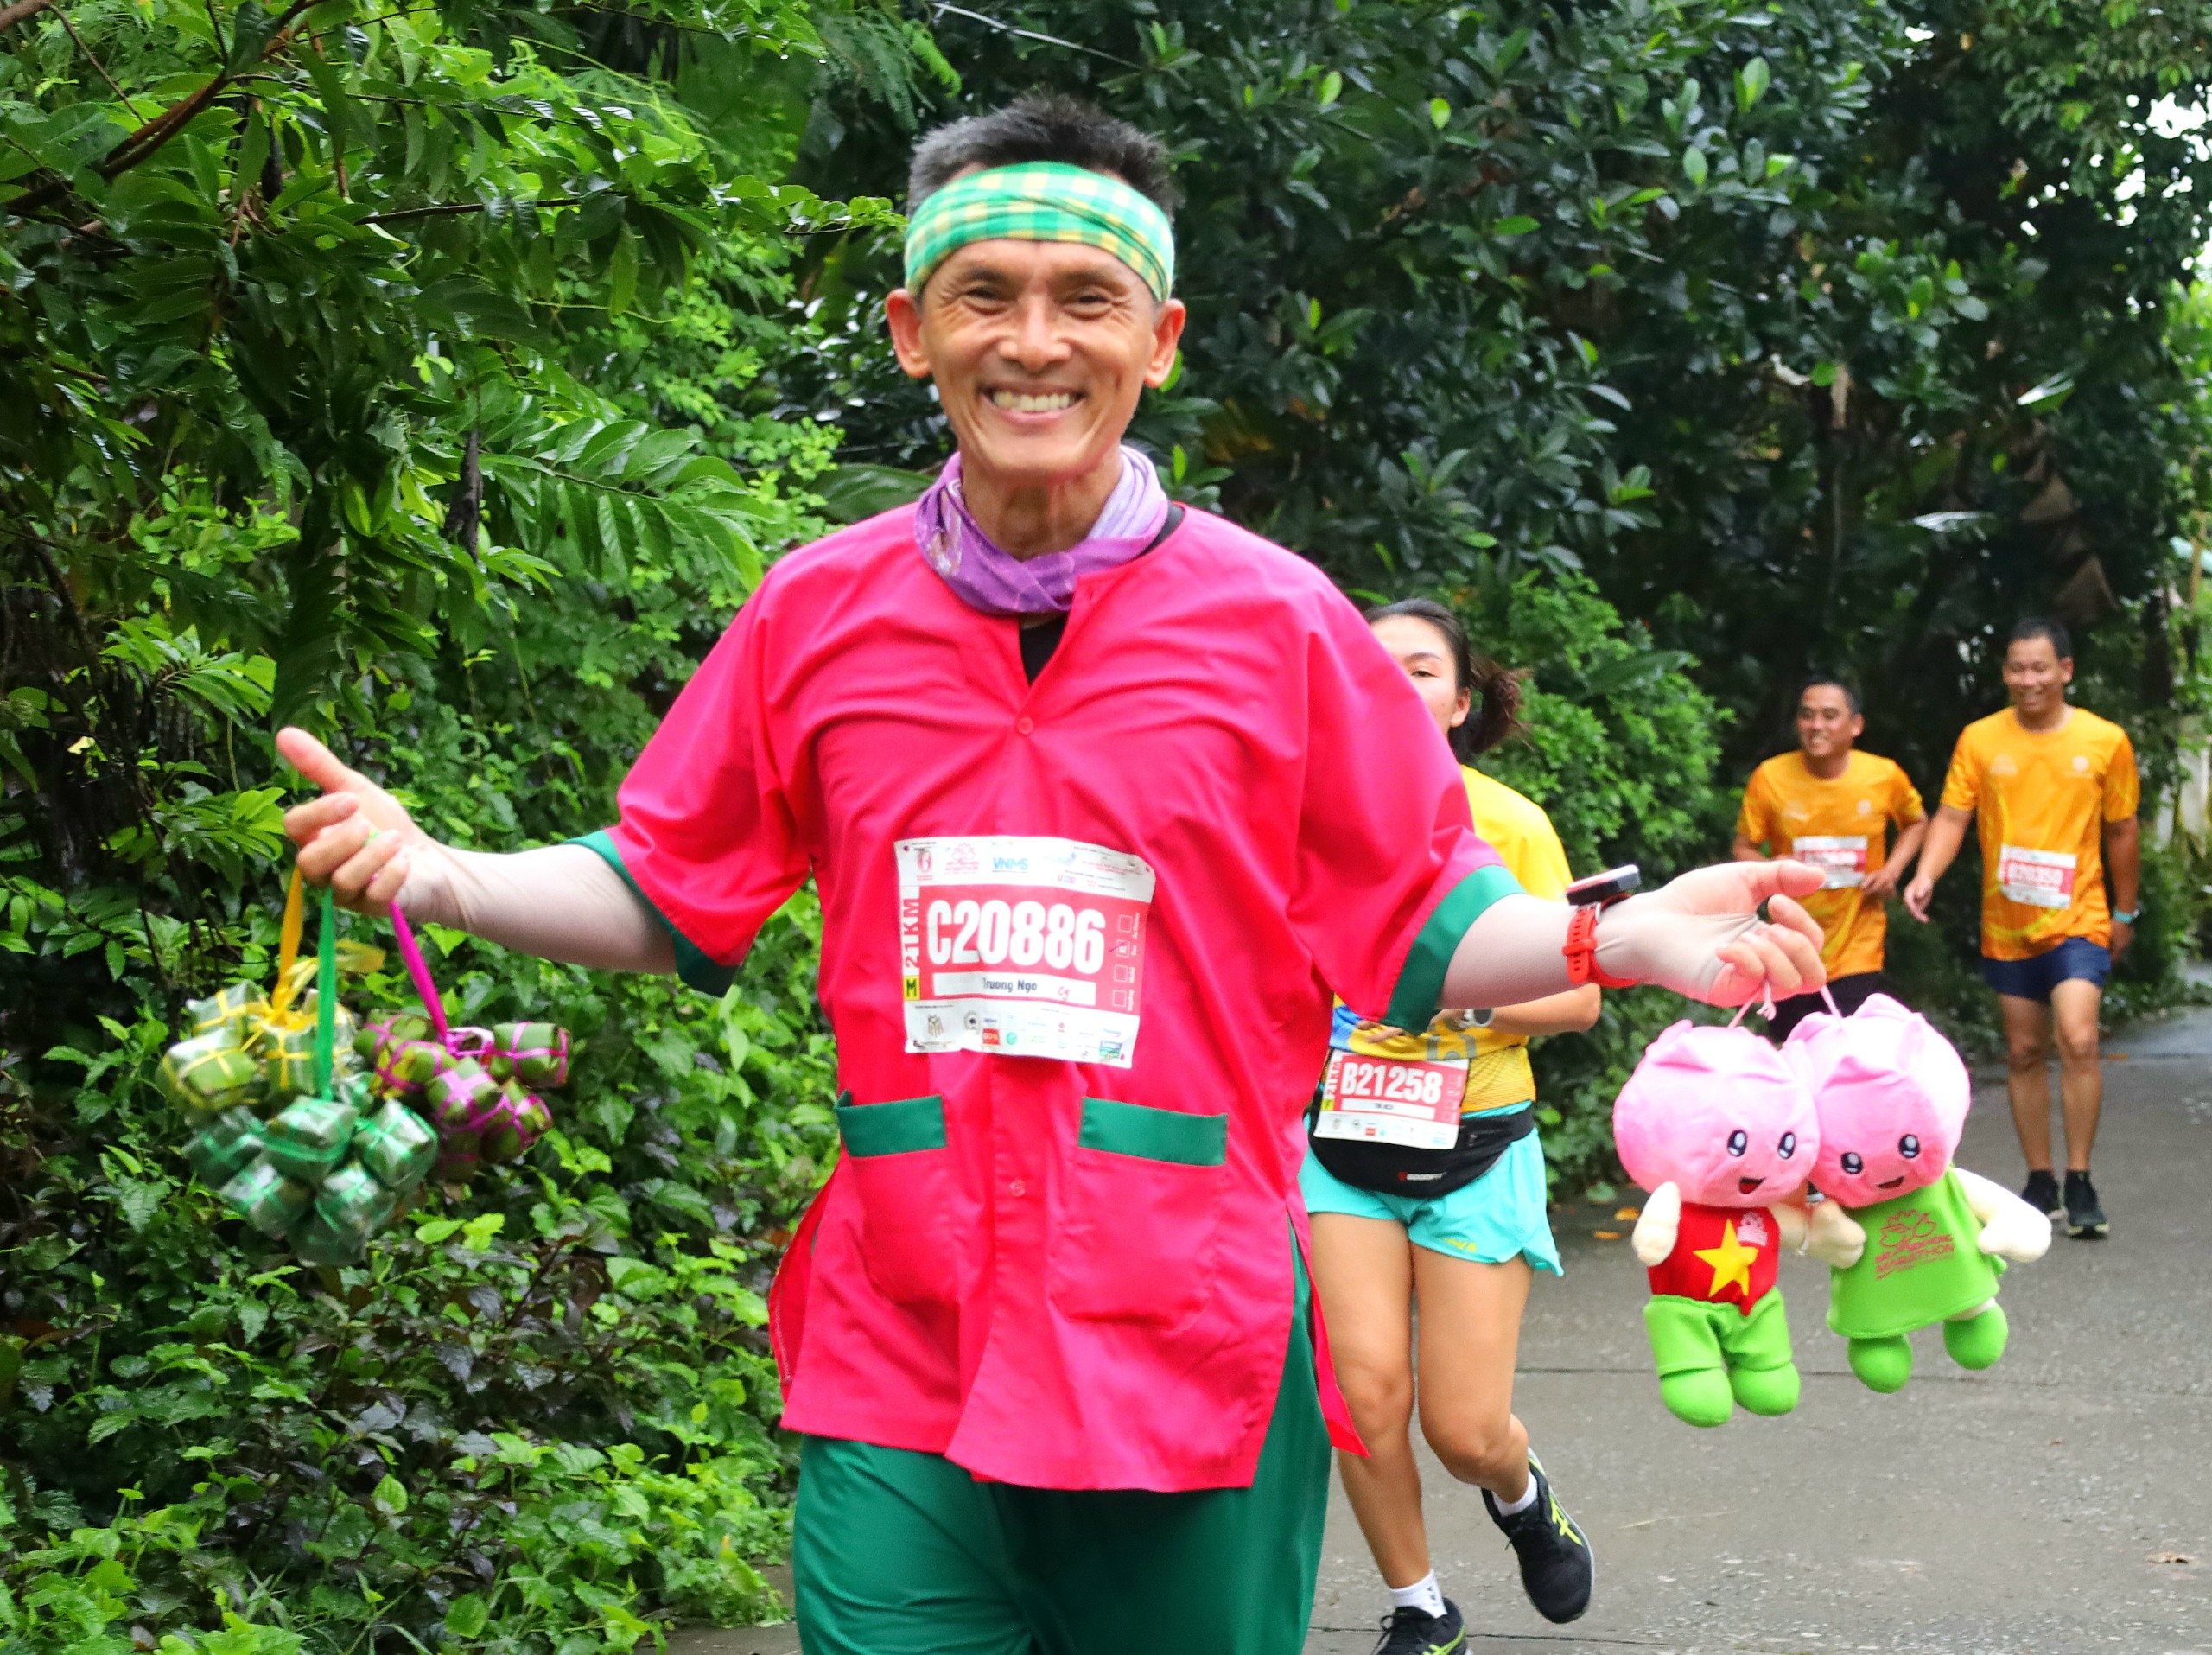 Anh Ngô Văn Trường - CLB Long An Runners với trang phục chạy mang hình ảnh giới thiệu mãnh đất Sen hồng Đồng Tháp.